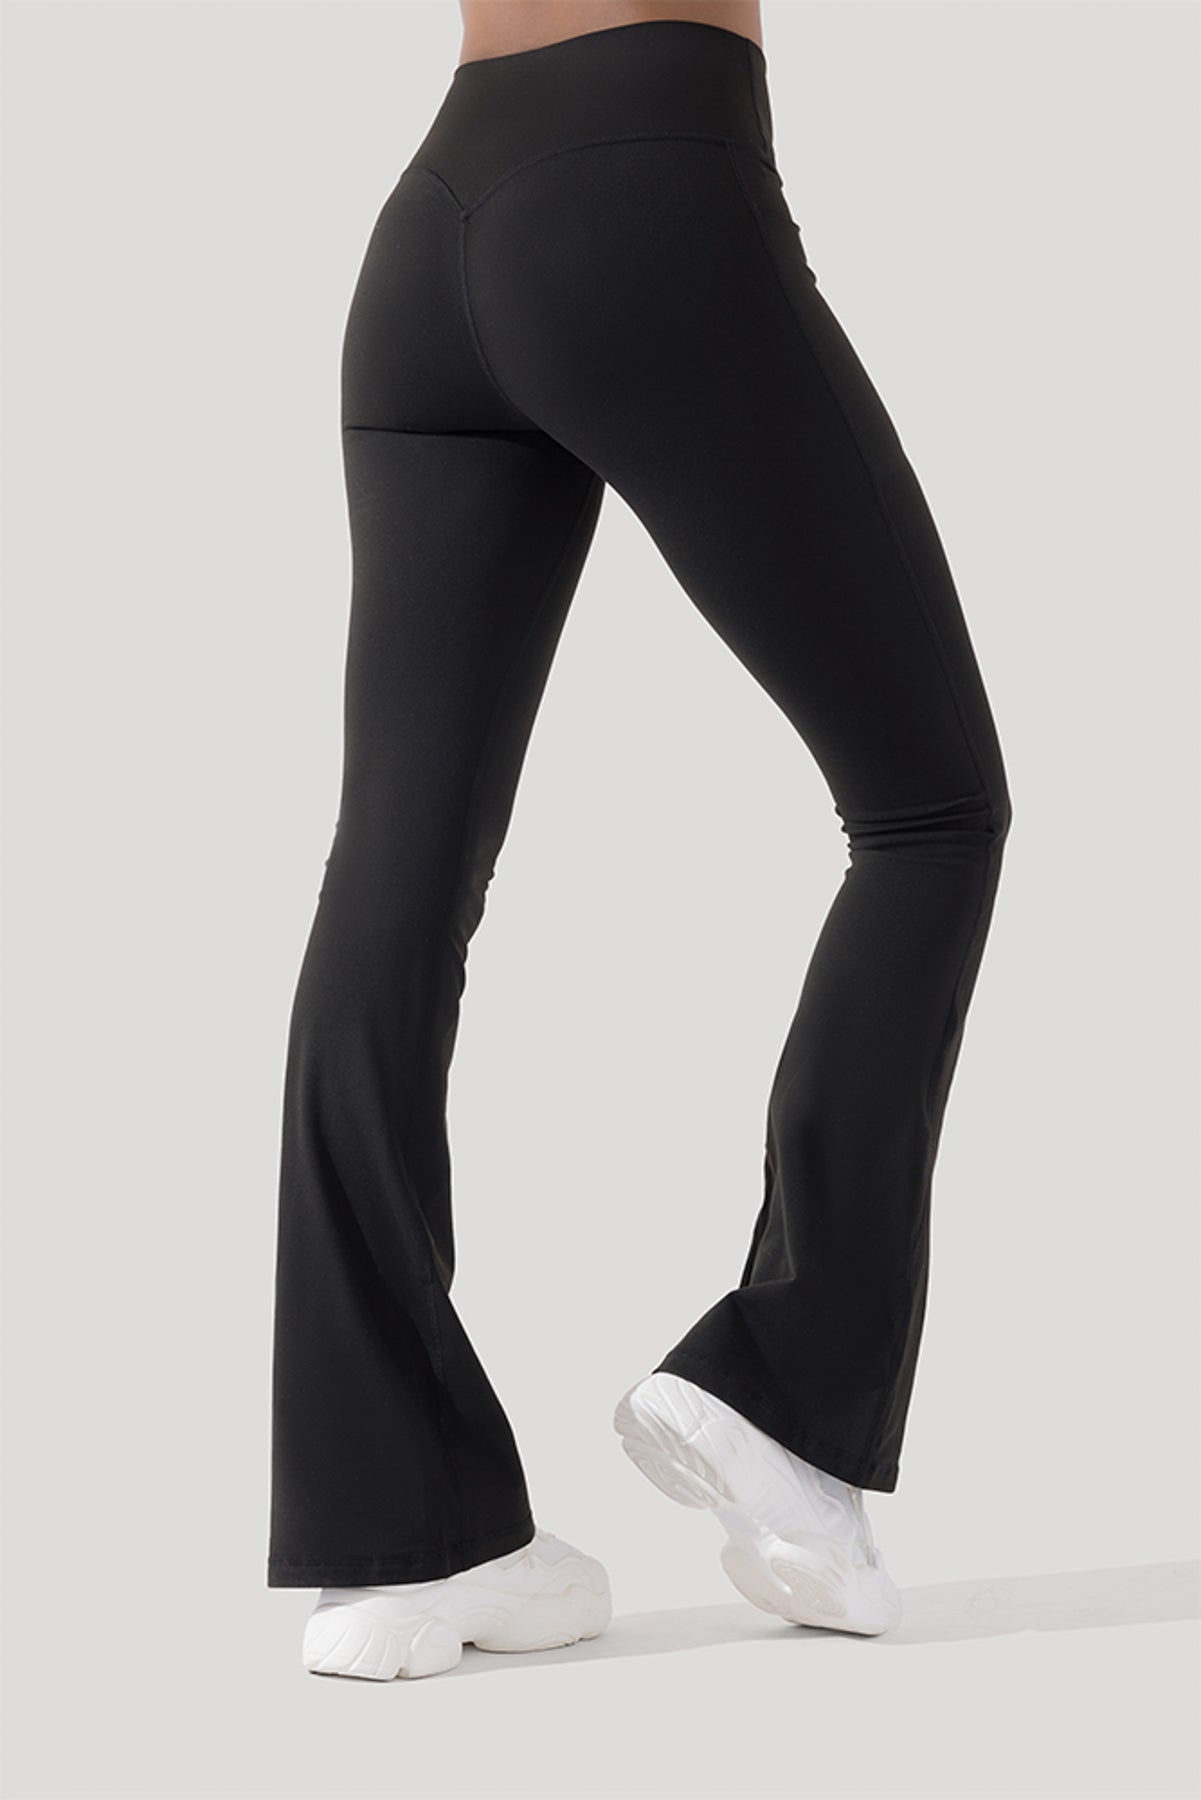 Ultra High-Waist Flare Legging W/ Pockets 28'' (Noir)